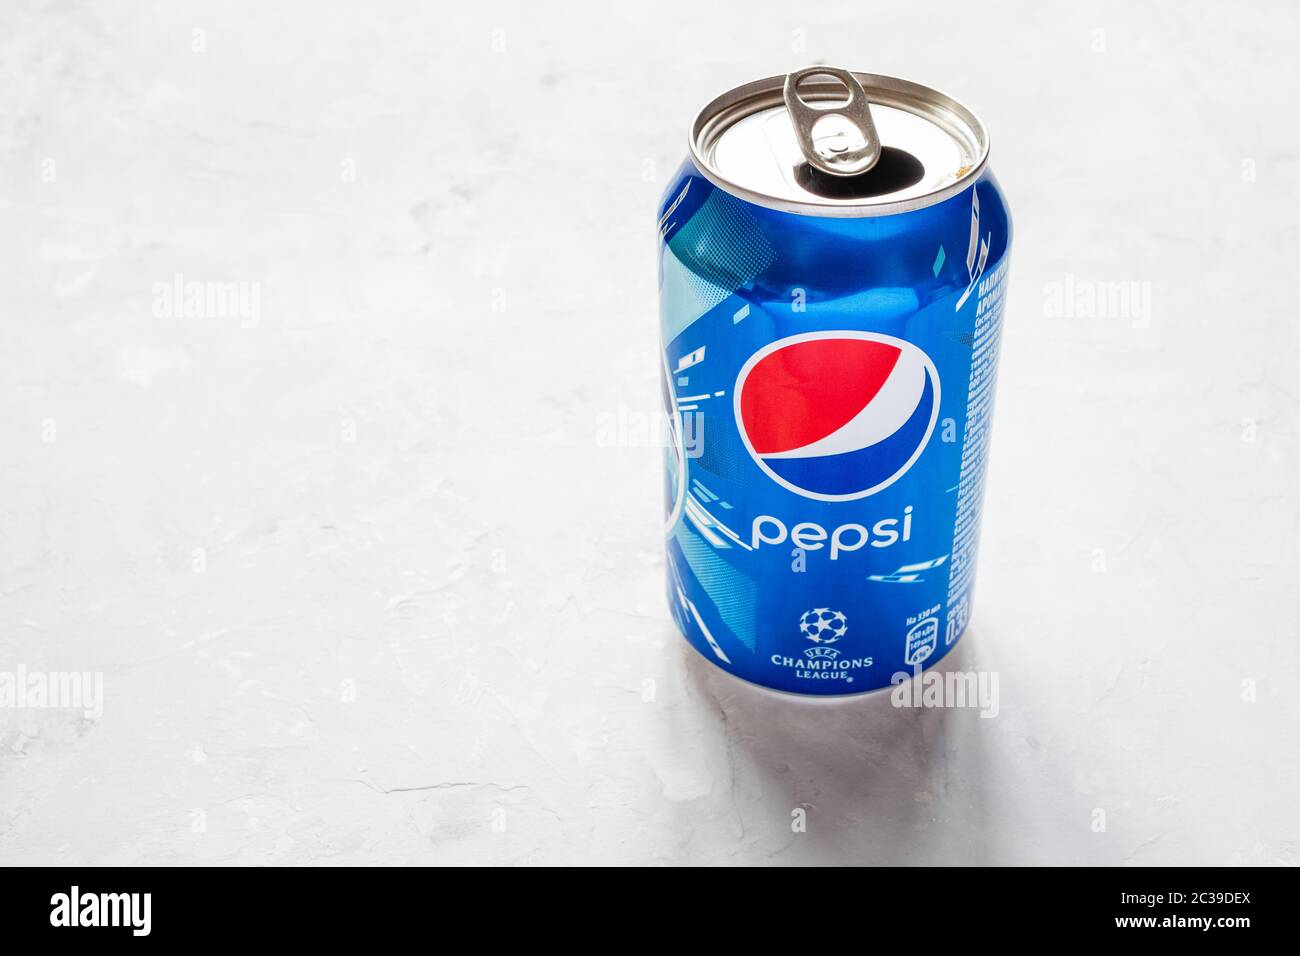 MOSCA, RUSSIA - 17 GIUGNO 2020: Open CAN di Pepsi con il logo della UEFA Champions League su pavimento in cemento. Pepsi è una bevanda analcolica gassata prodotta da Foto Stock